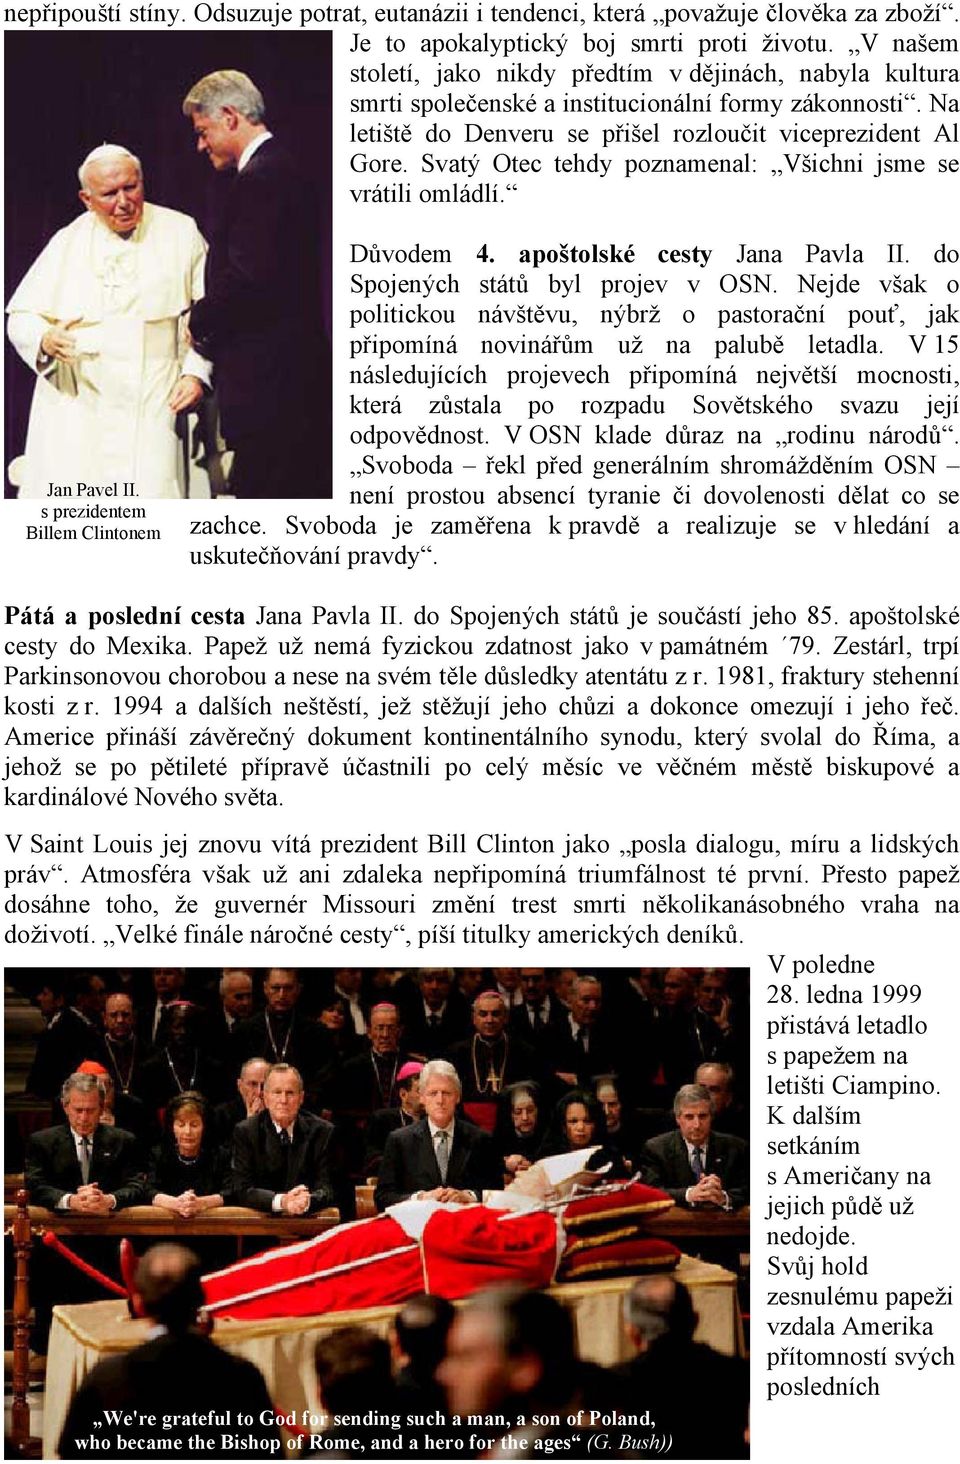 Svatý Otec tehdy poznamenal: Všichni jsme se vrátili omládlí. Jan Pavel II. s prezidentem Billem Clintonem Důvodem 4. apoštolské cesty Jana Pavla II. do Spojených států byl projev v OSN.